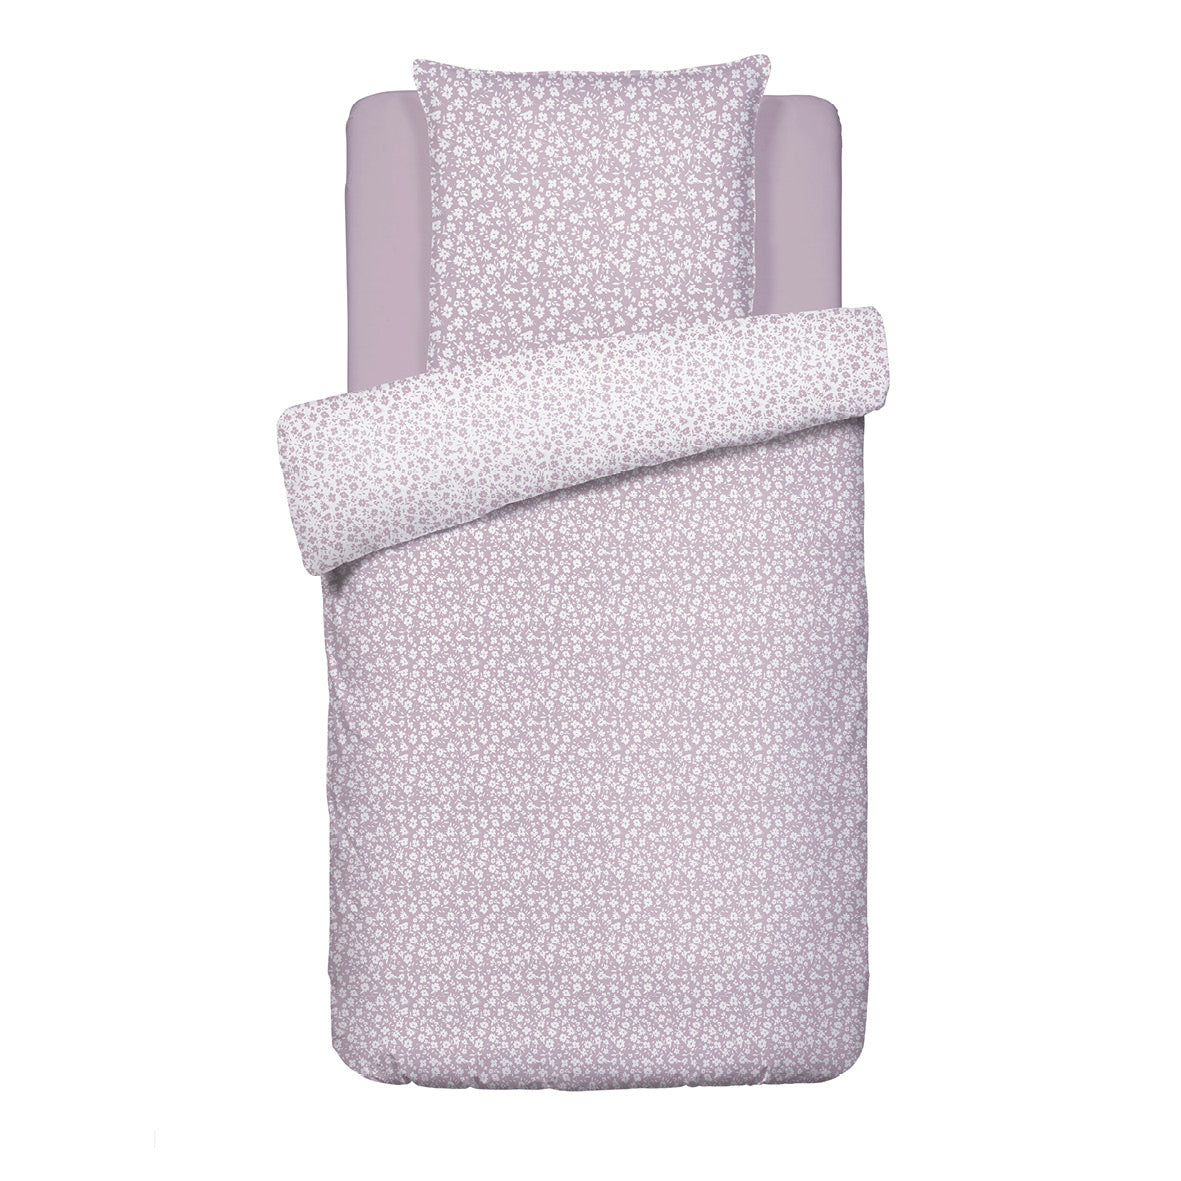 Duvet cover + pillowcase(s) cotton satin - Les Yeux de Suzanne Lavender